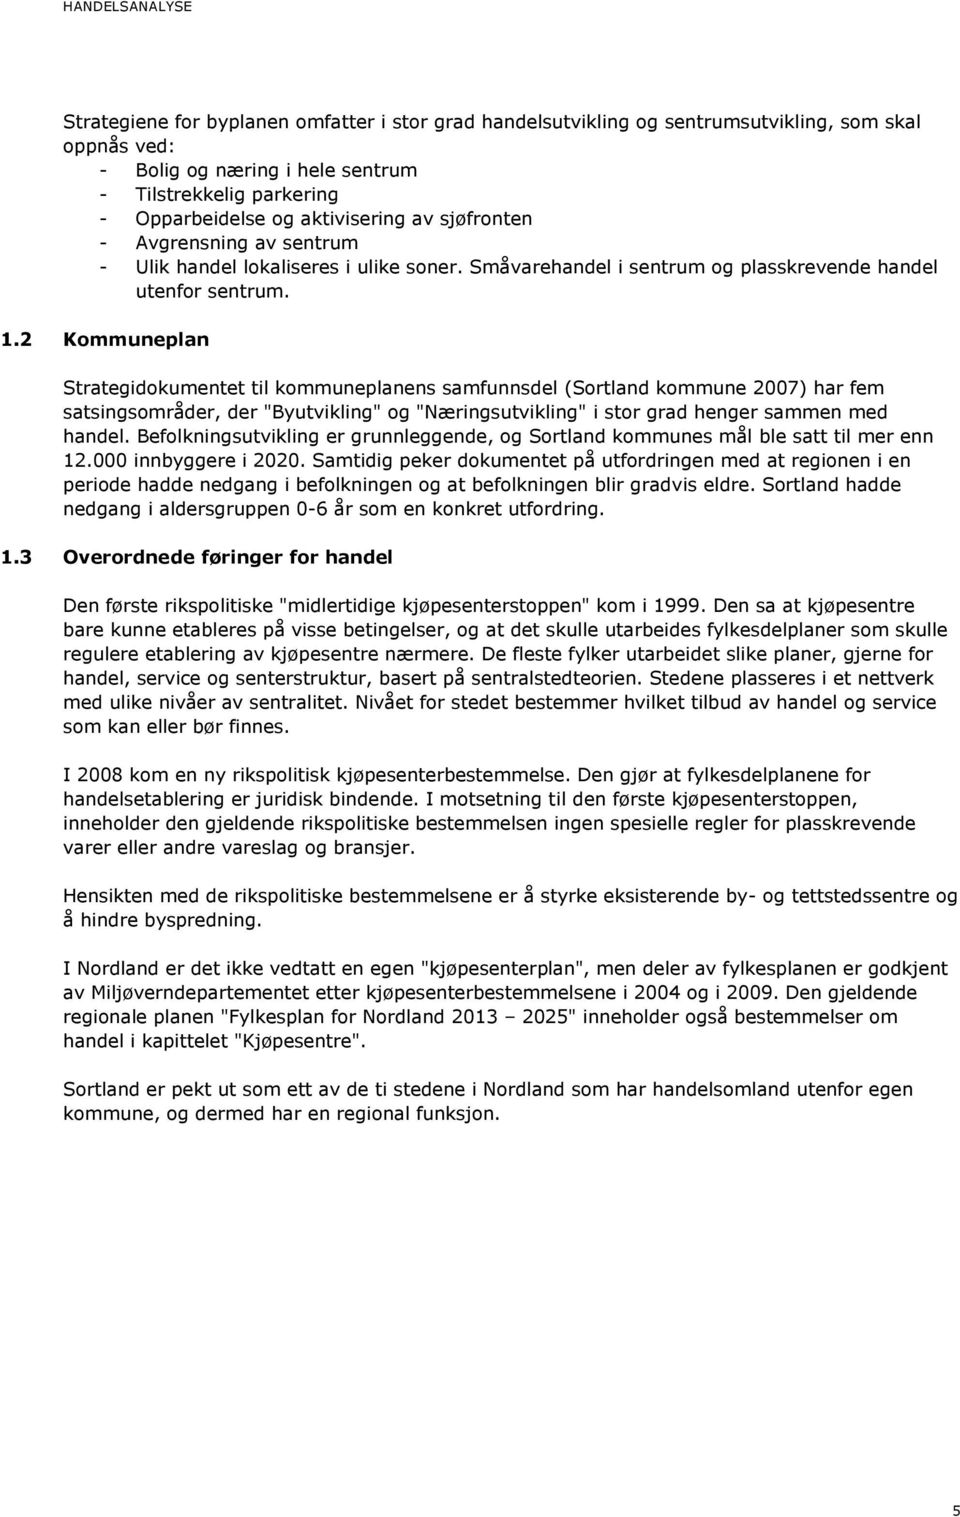 2 Kommuneplan Strategidokumentet til kommuneplanens samfunnsdel (Sortland kommune 2007) har fem satsingsområder, der "Byutvikling" og "Næringsutvikling" i stor grad henger sammen med handel.